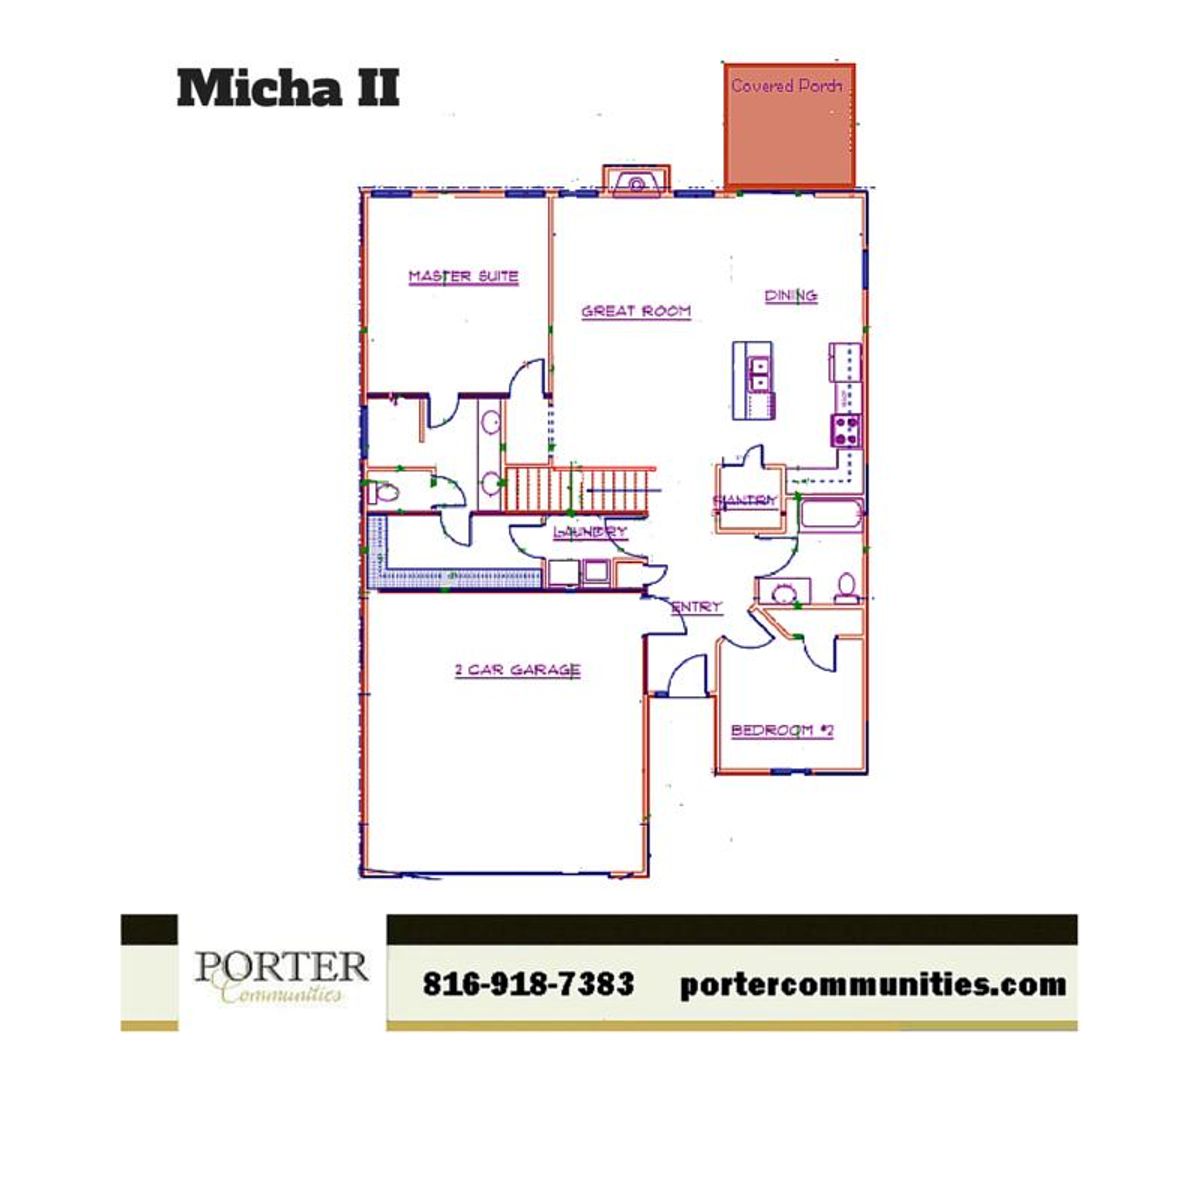 Micha II Floor Plan